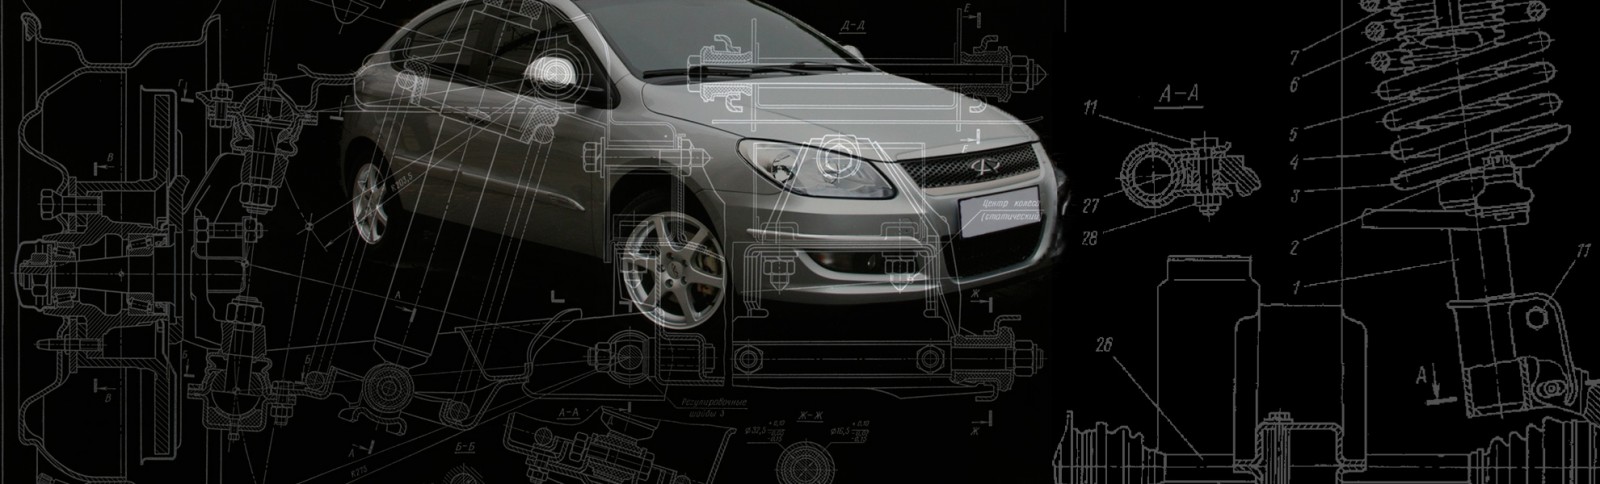 Motus Automotive - Оптовые продажи автозапчастей на автомобили китайских производителей